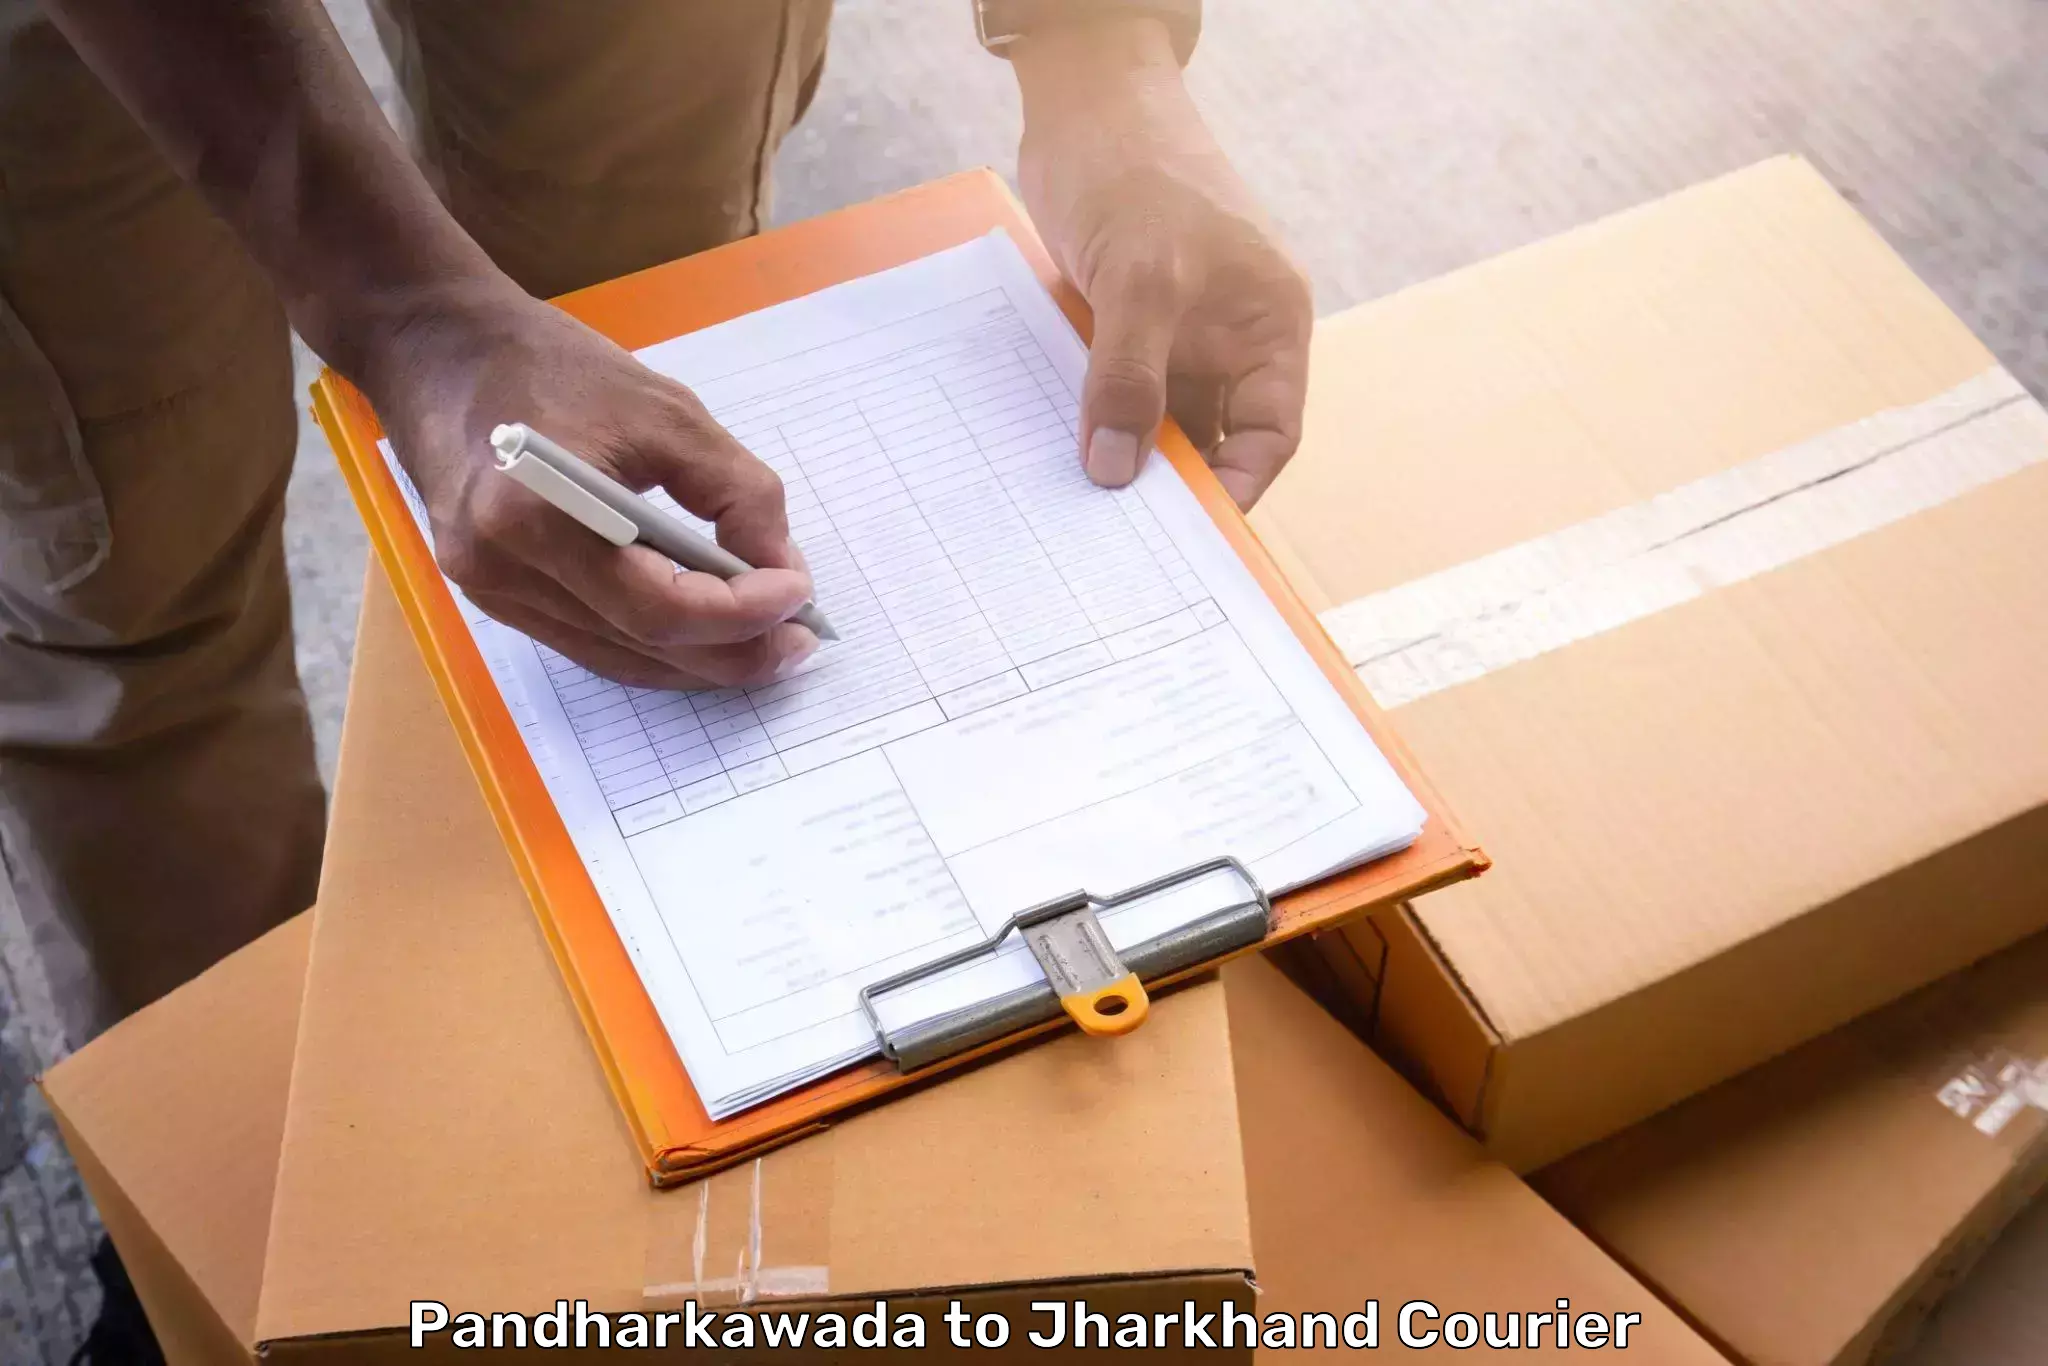 Luggage shipment tracking Pandharkawada to Bokaro